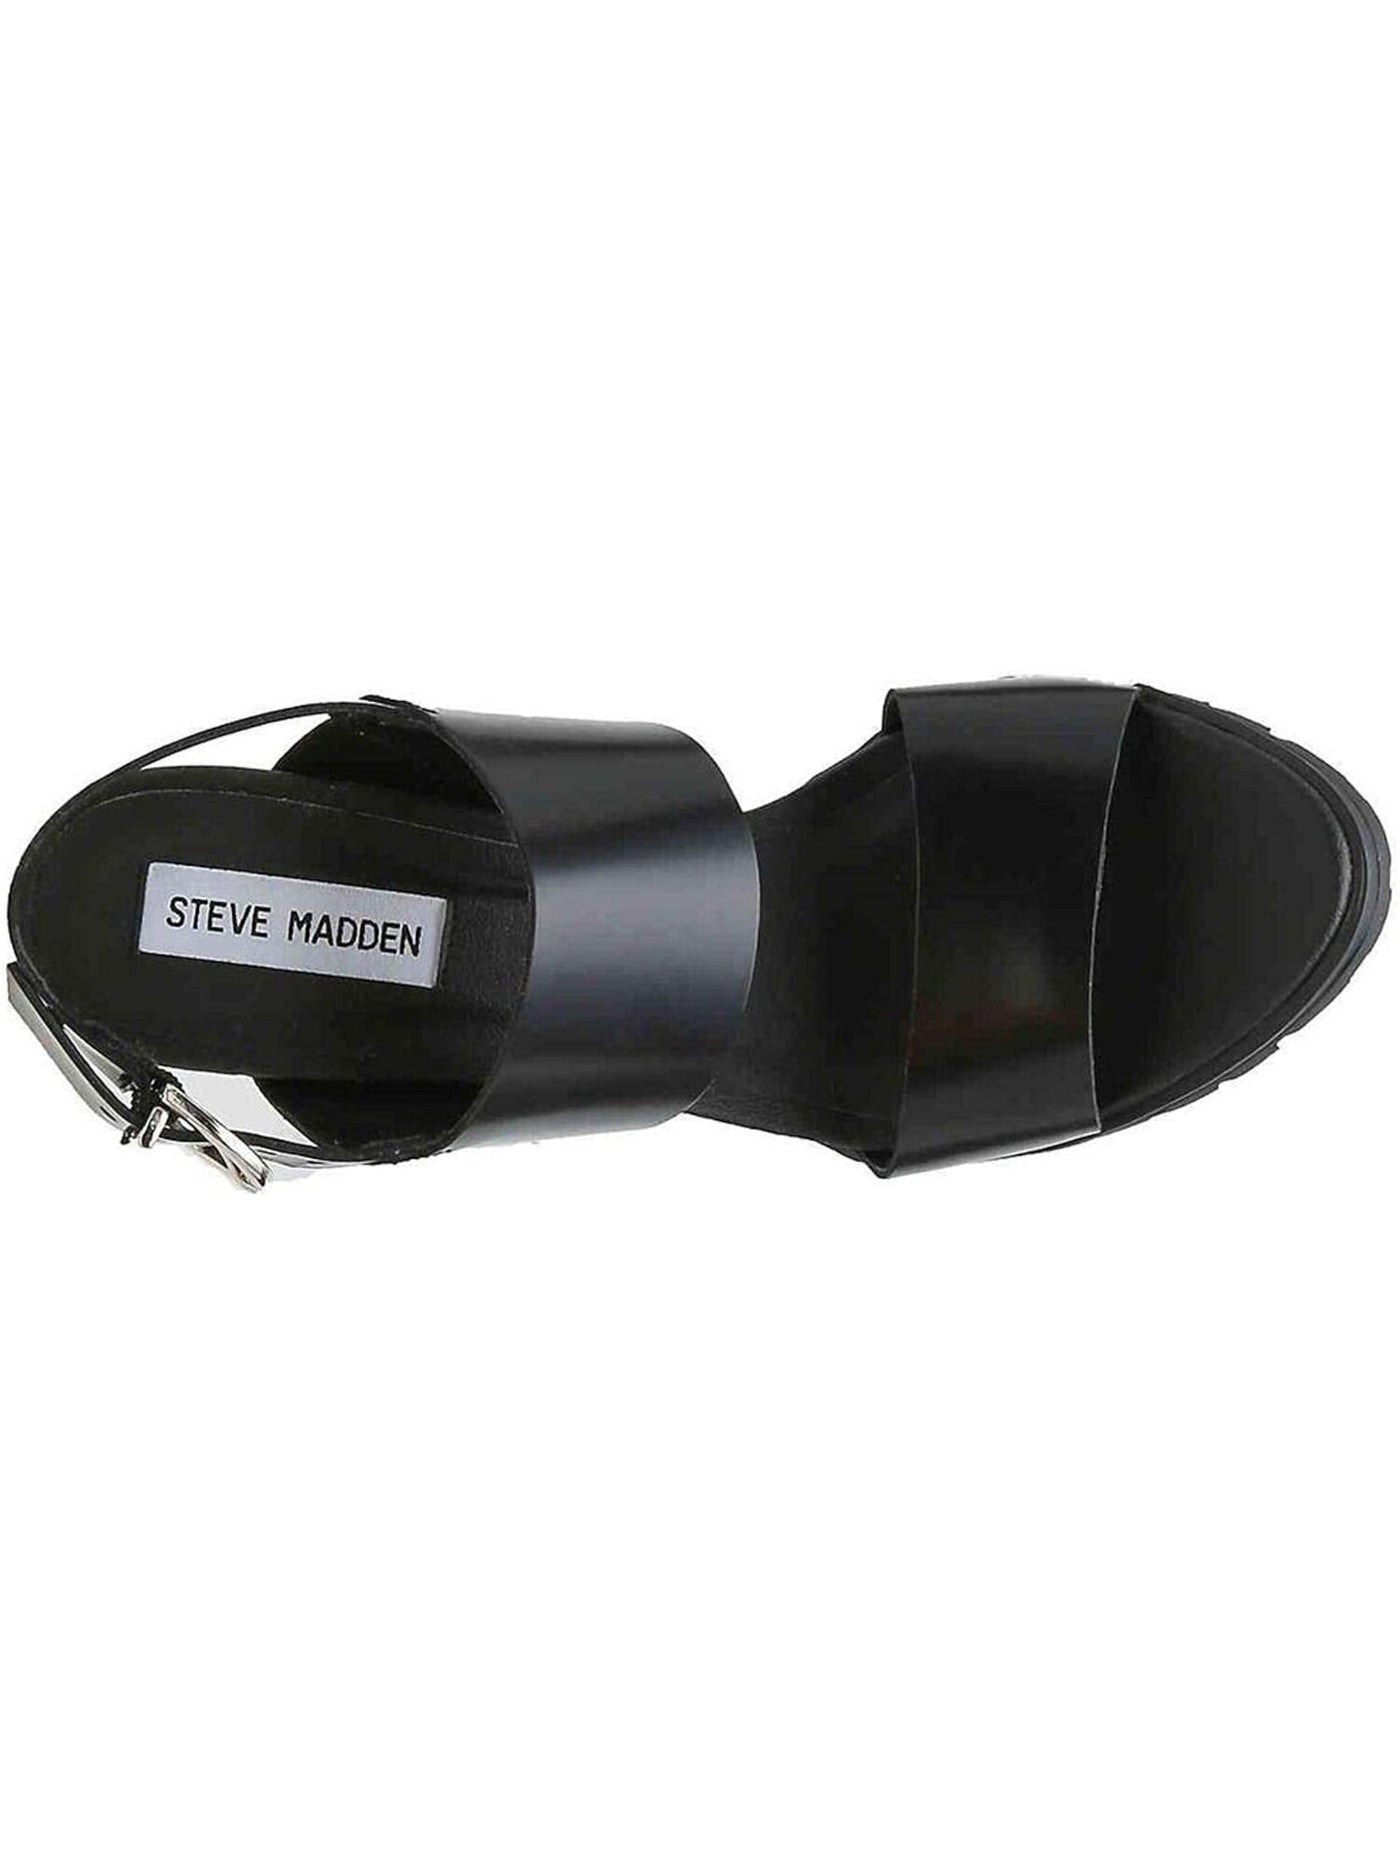 STEVE MADDEN Womens Black 1/2" Platform Wide Straps Lug Sole Emil Round Toe Block Heel Buckle Leather Slingback Sandal M